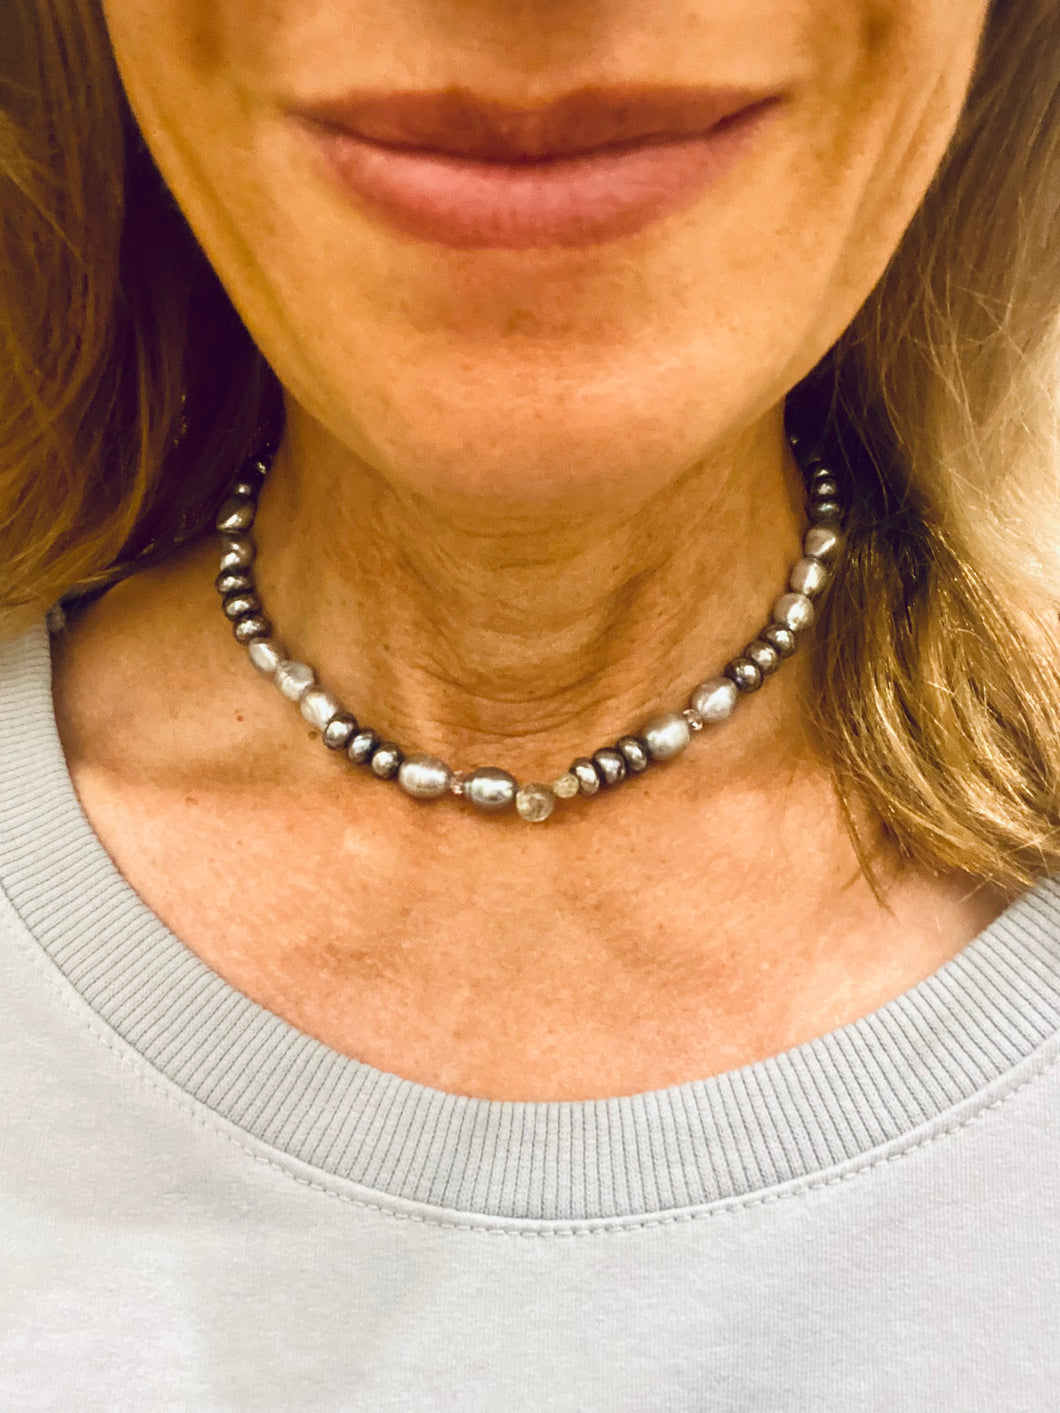 Grey necklace